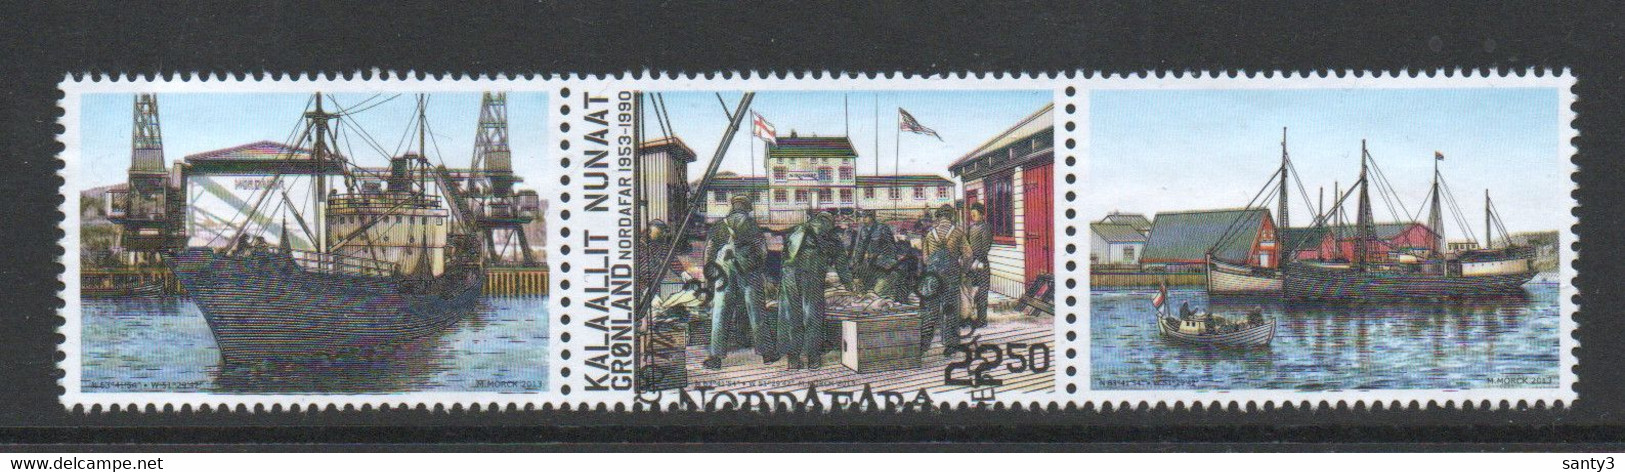 Groenland 2013 Yv 625 Uit Blok F625 Hoge Waarde, Gestempeld - Used Stamps